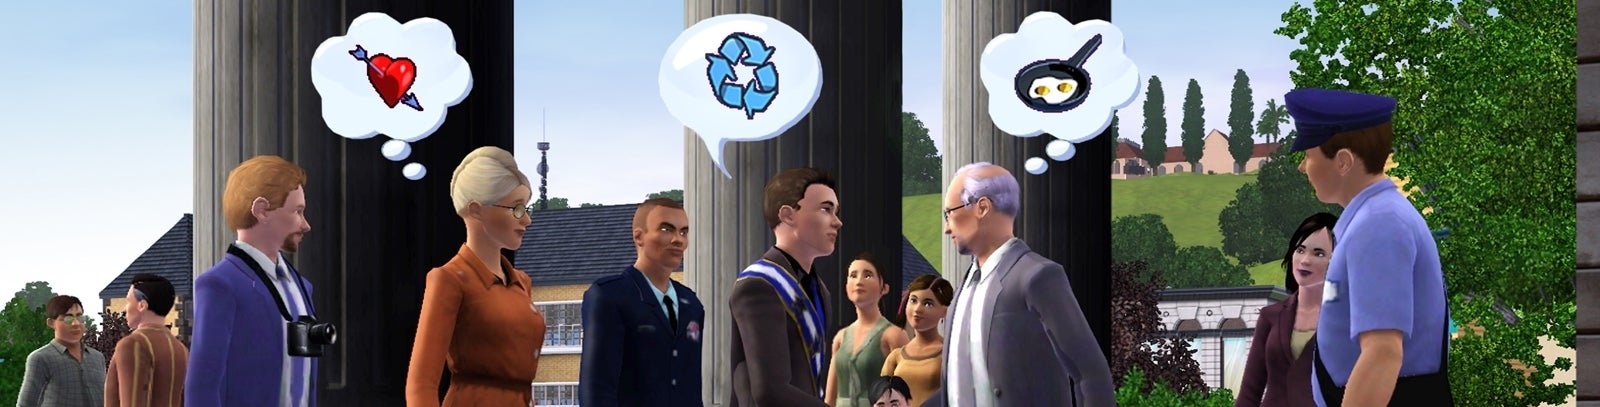 Immagine di Il 2013 dei Sims è pieno di Stuff Pack e espansioni!